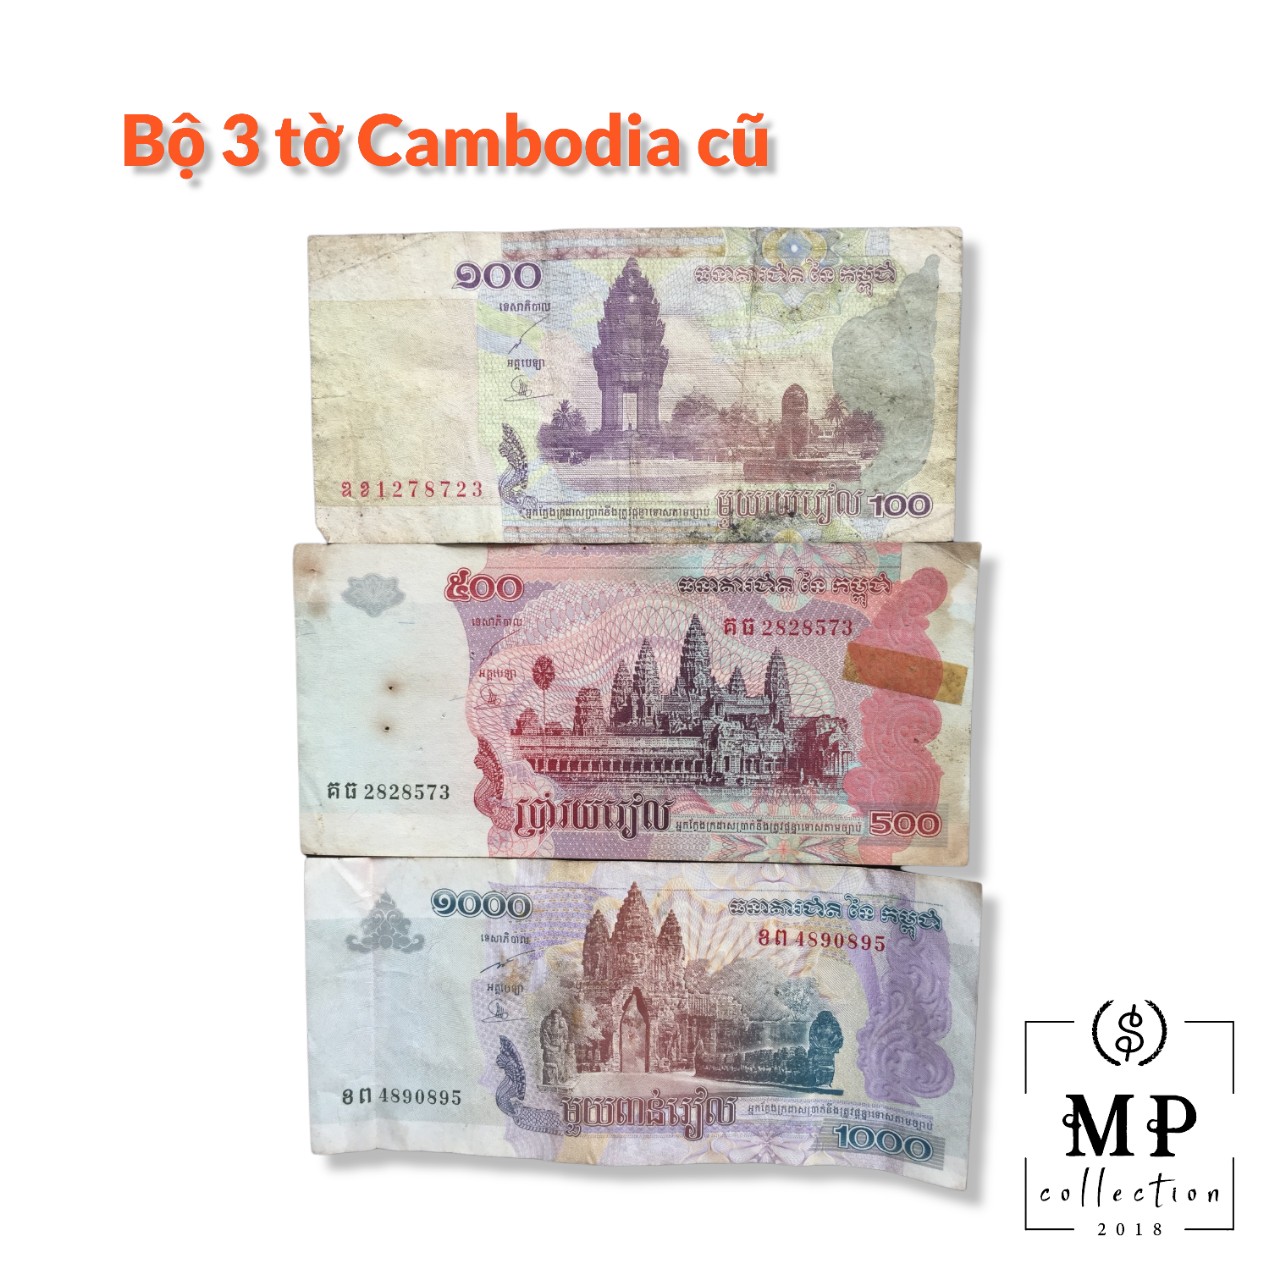 Set 3 tờ Cambodia Campuchia đã qua sử dụng có hình ảnh Angkowat.